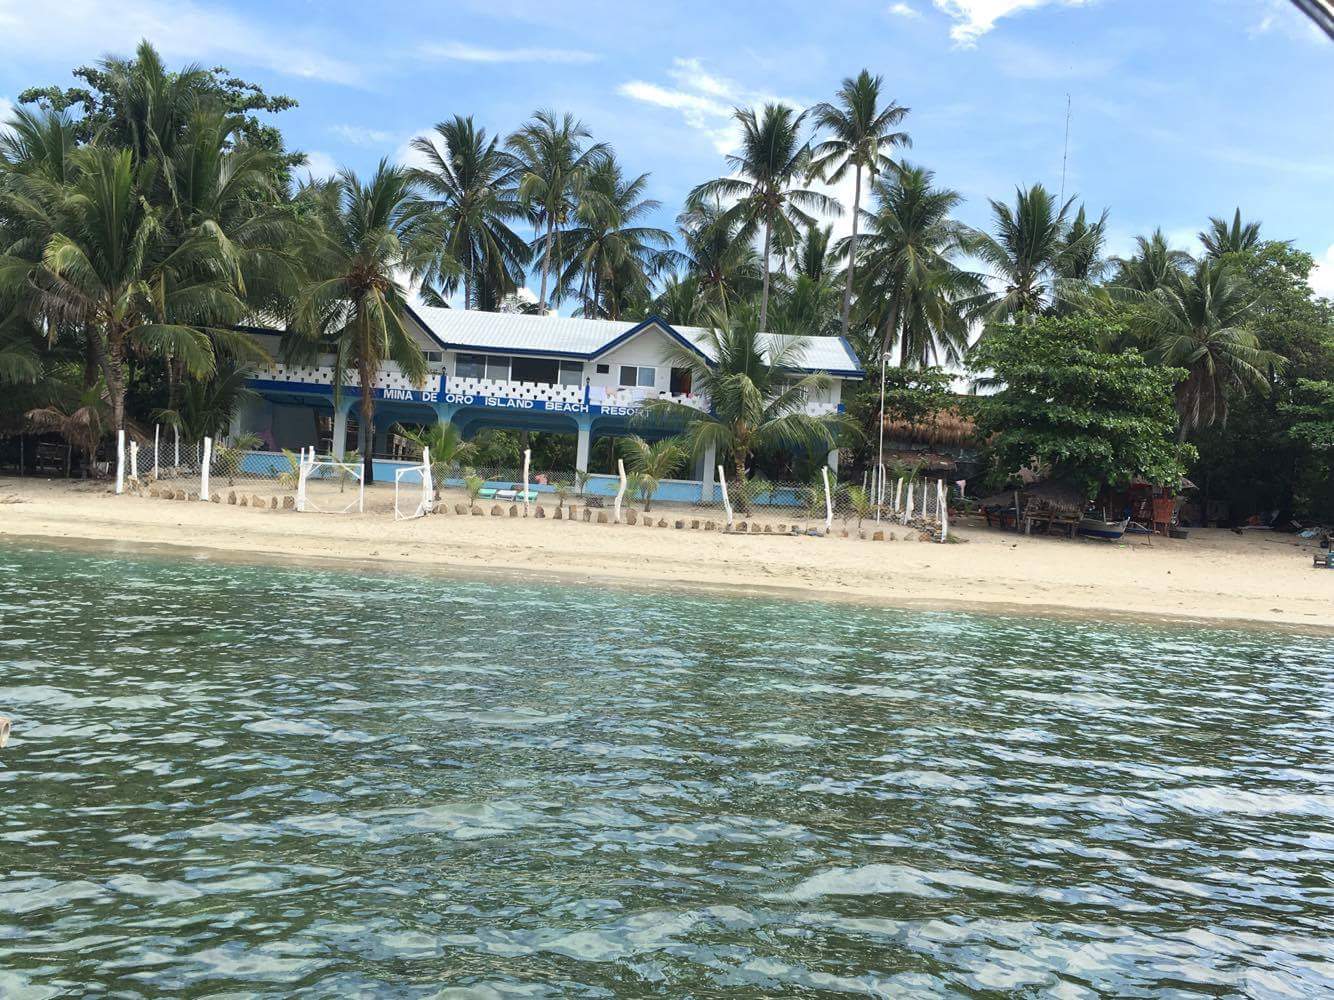 Fotografie cu Tayamaan Beach - locul popular printre cunoscătorii de relaxare